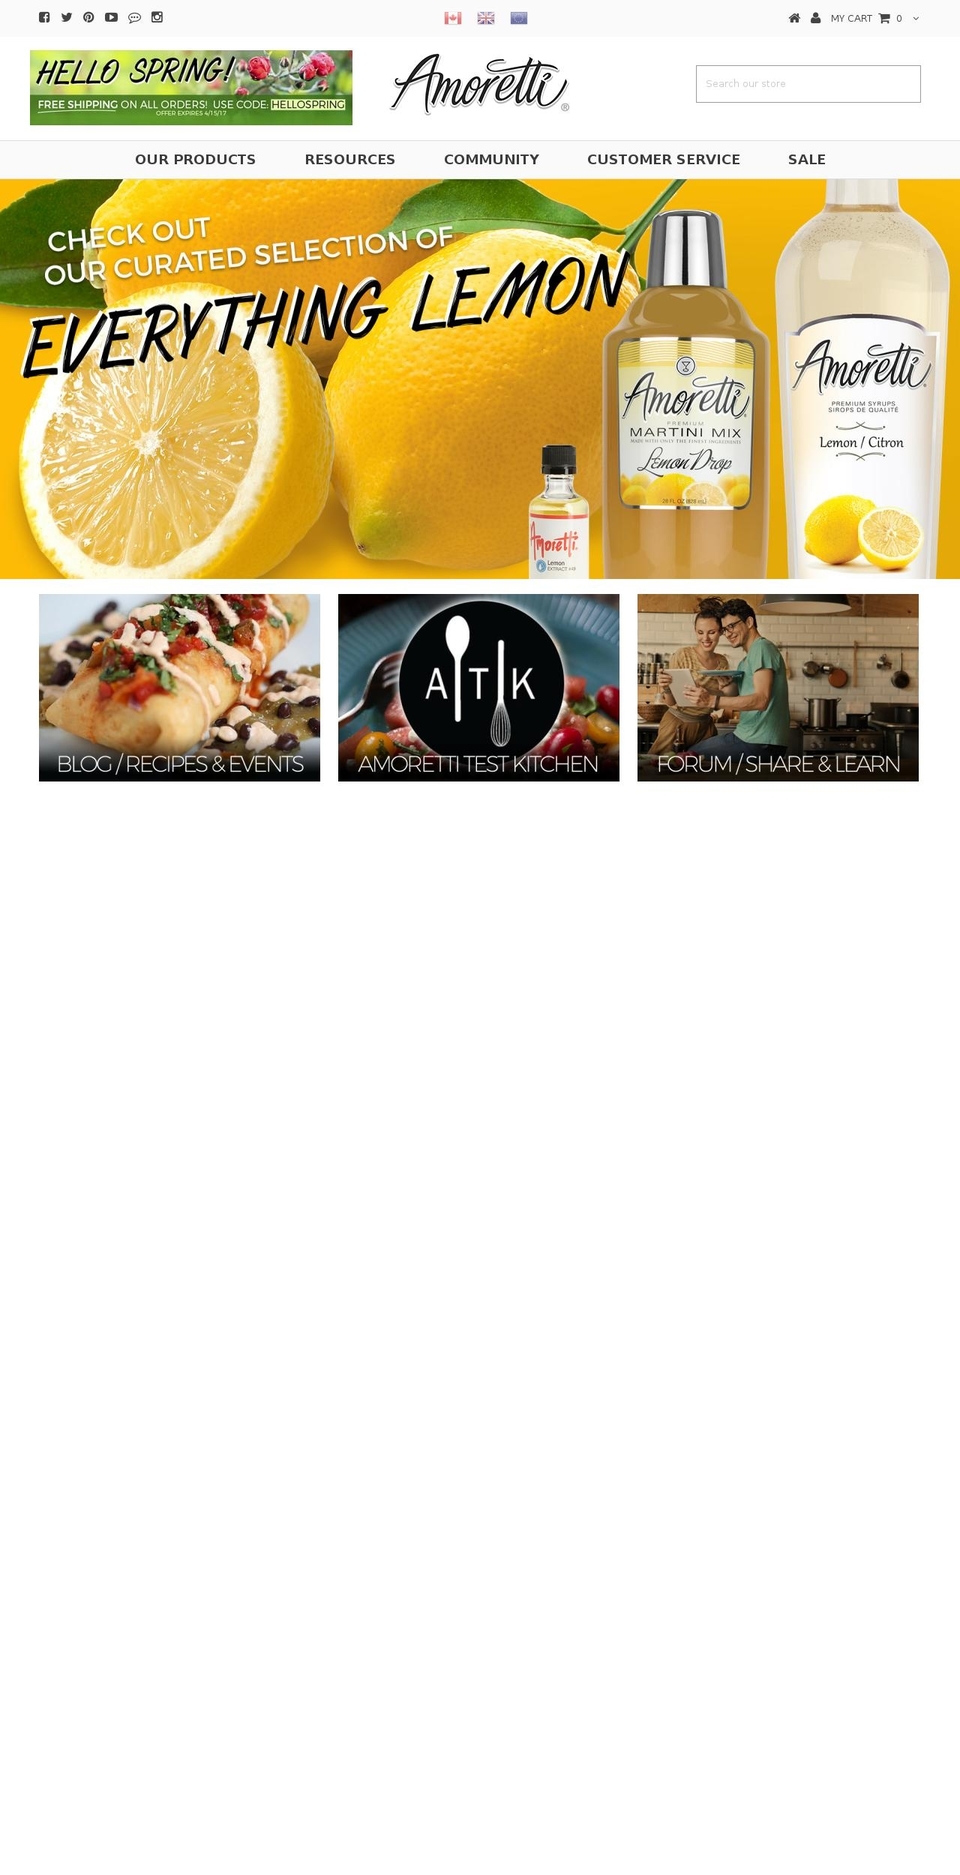 amoretti.com shopify website screenshot